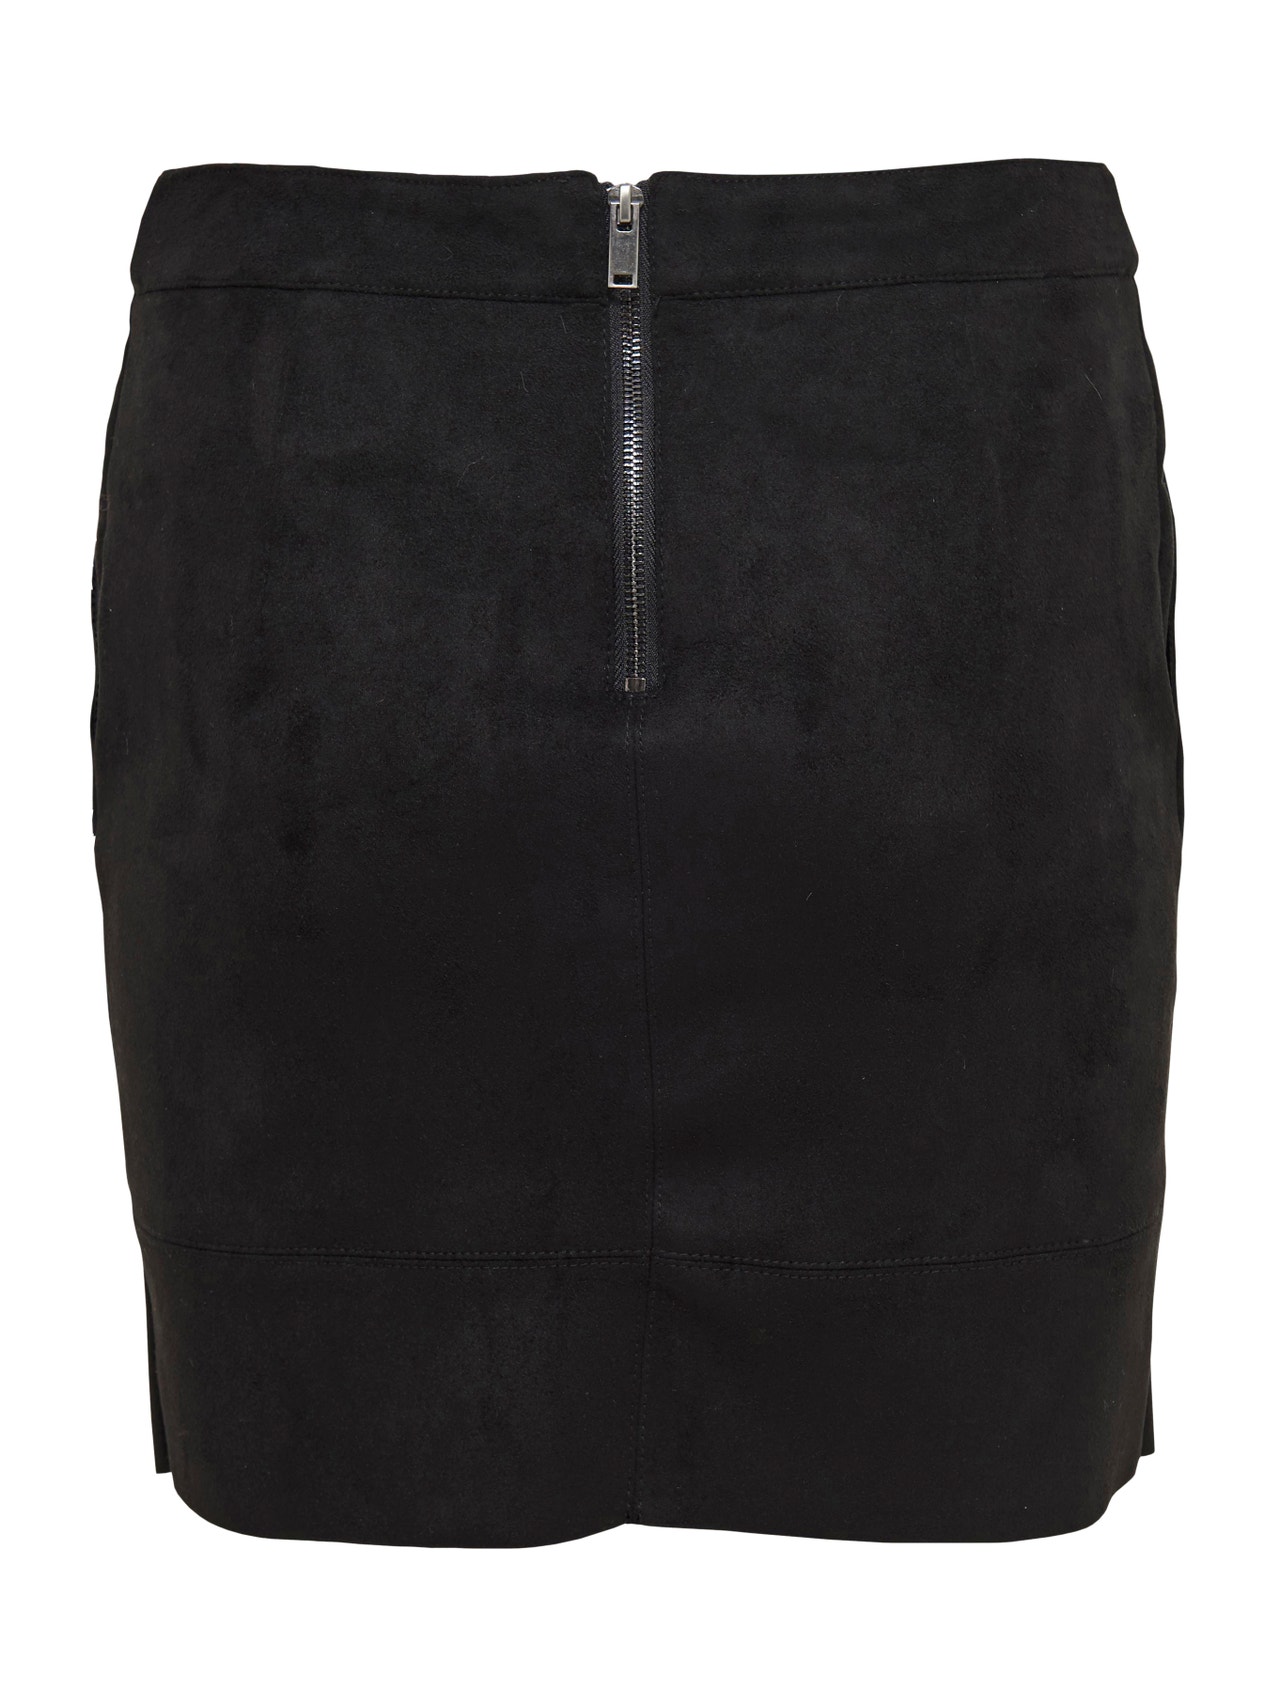 ONLY Short skirt -Black - 15165913